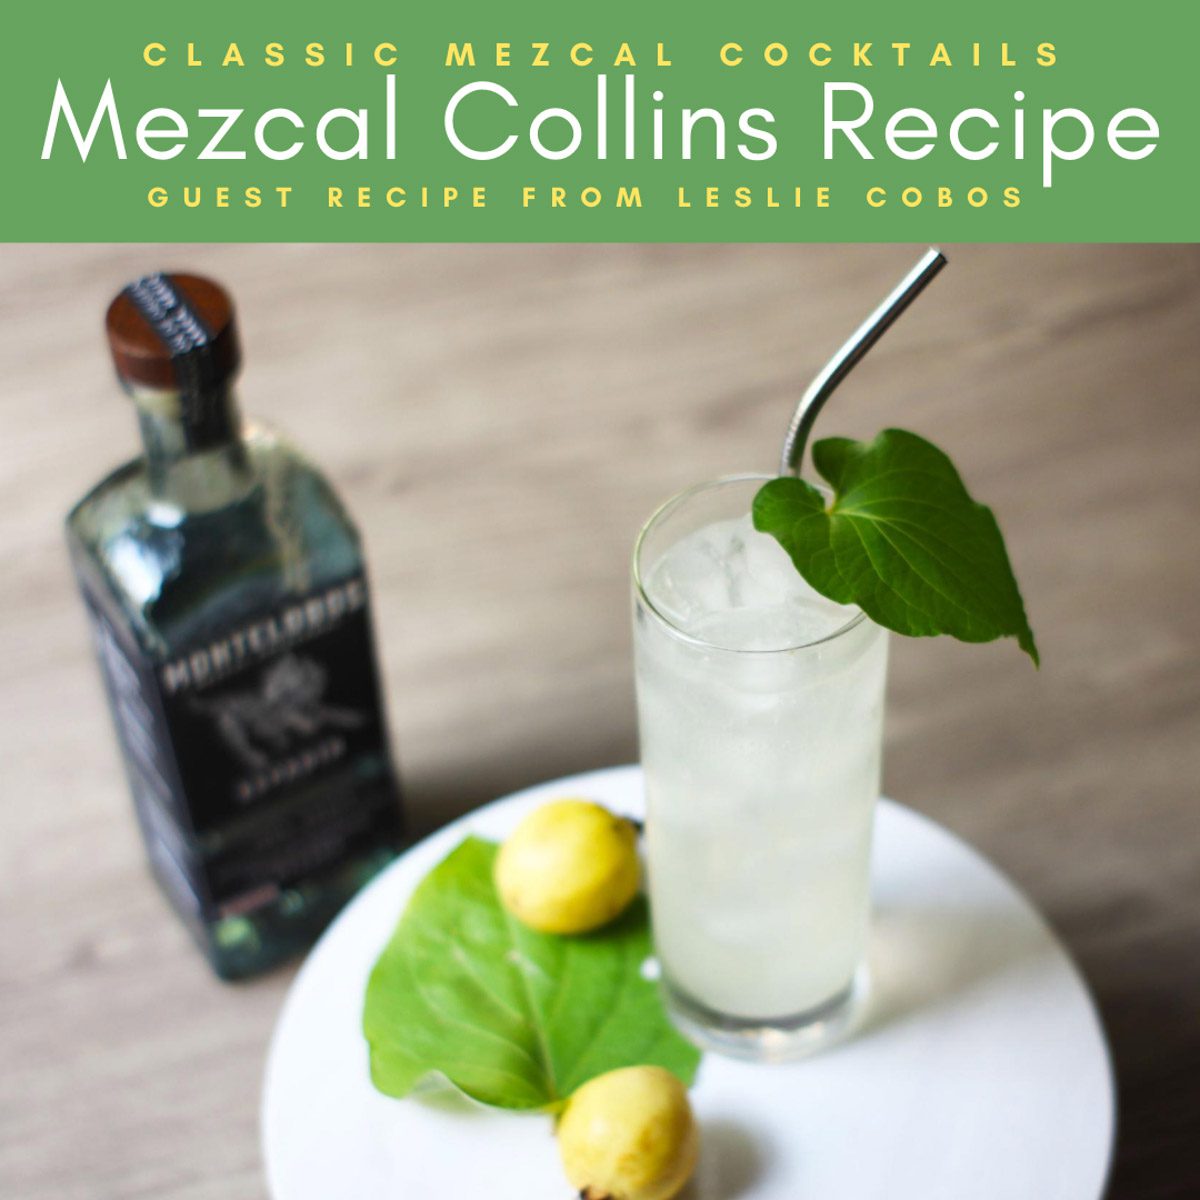 Copy of Mezcal Collins Recipe Classic Mezcal Cocktails (1)LR